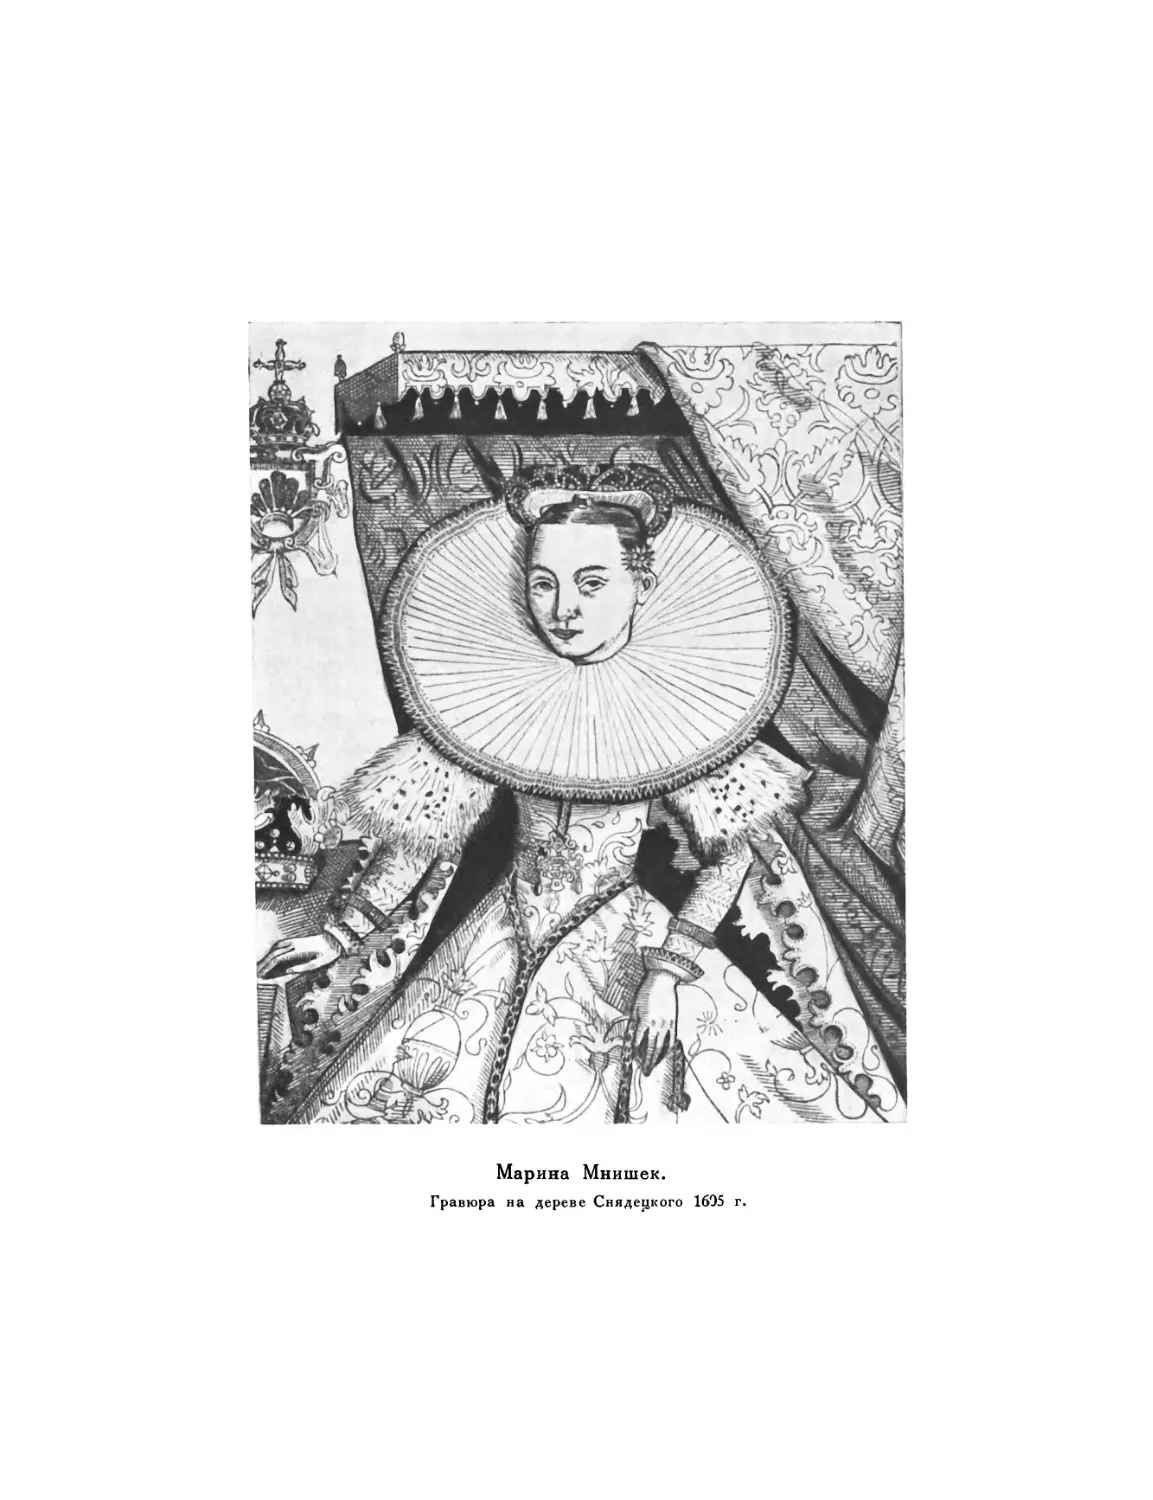 Вклейка. Марина Мнишек. Гравюра на дереве Снядецкого, 1605 г.